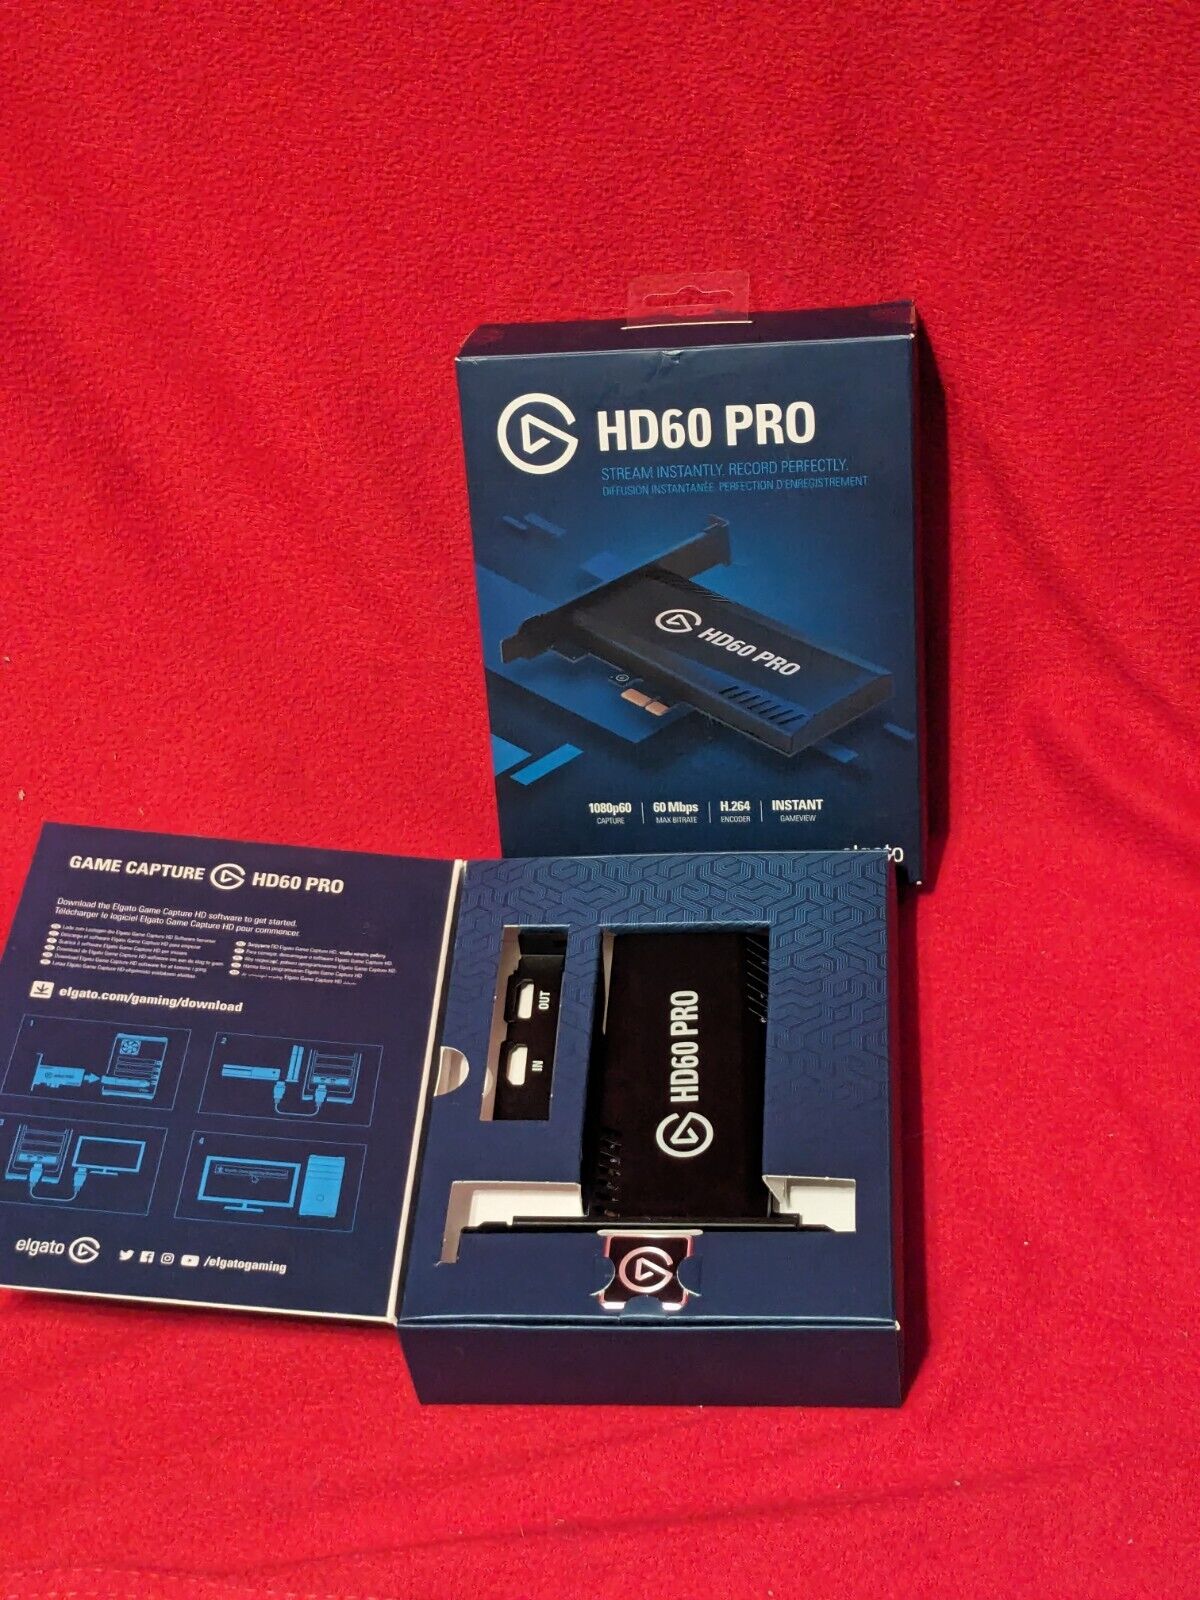 Used El Gato Elgato HD60 Pro HD 60 Video HDMI Capture PC Card PCIe Streaming